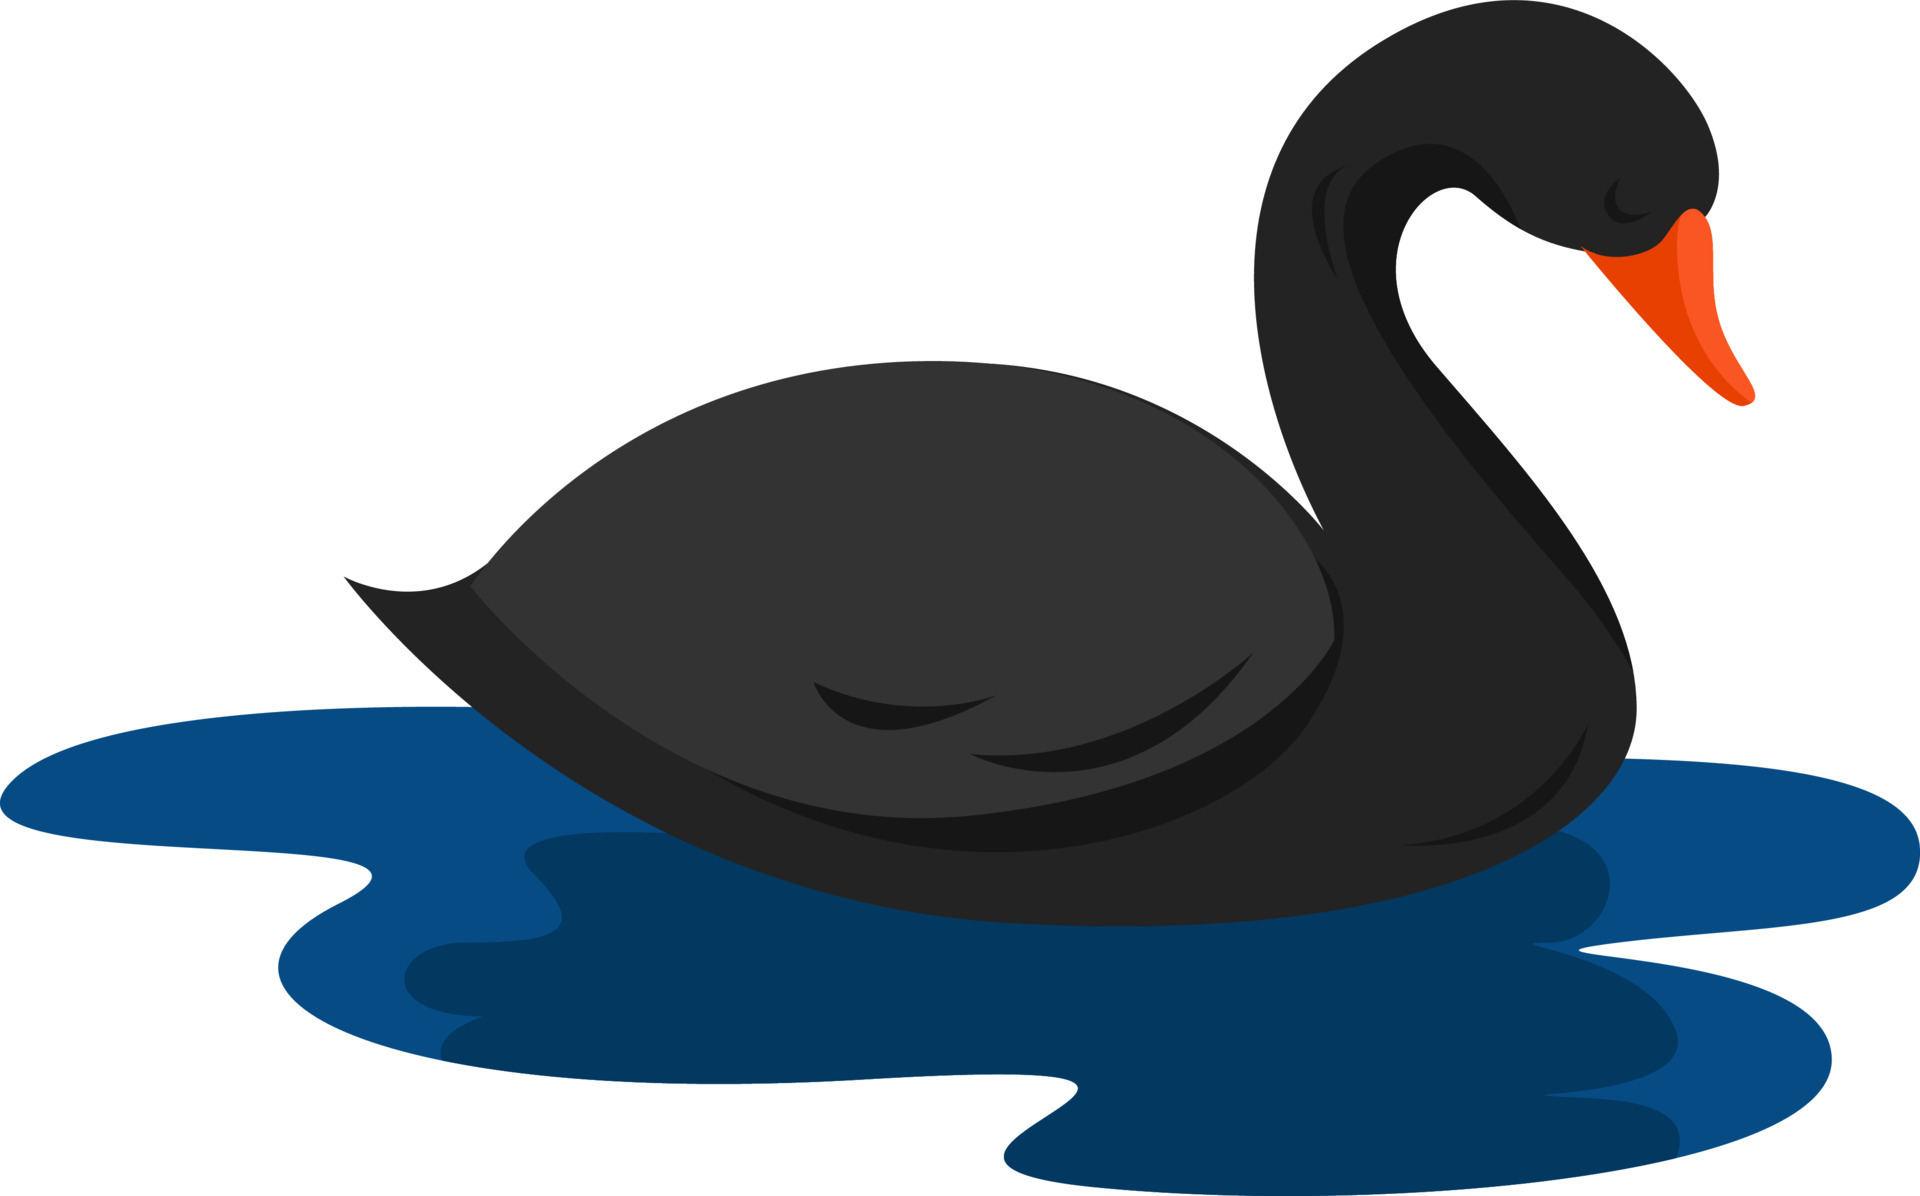 Black swan, illustration, vector on white background 13781812 Vector Art at  Vecteezy